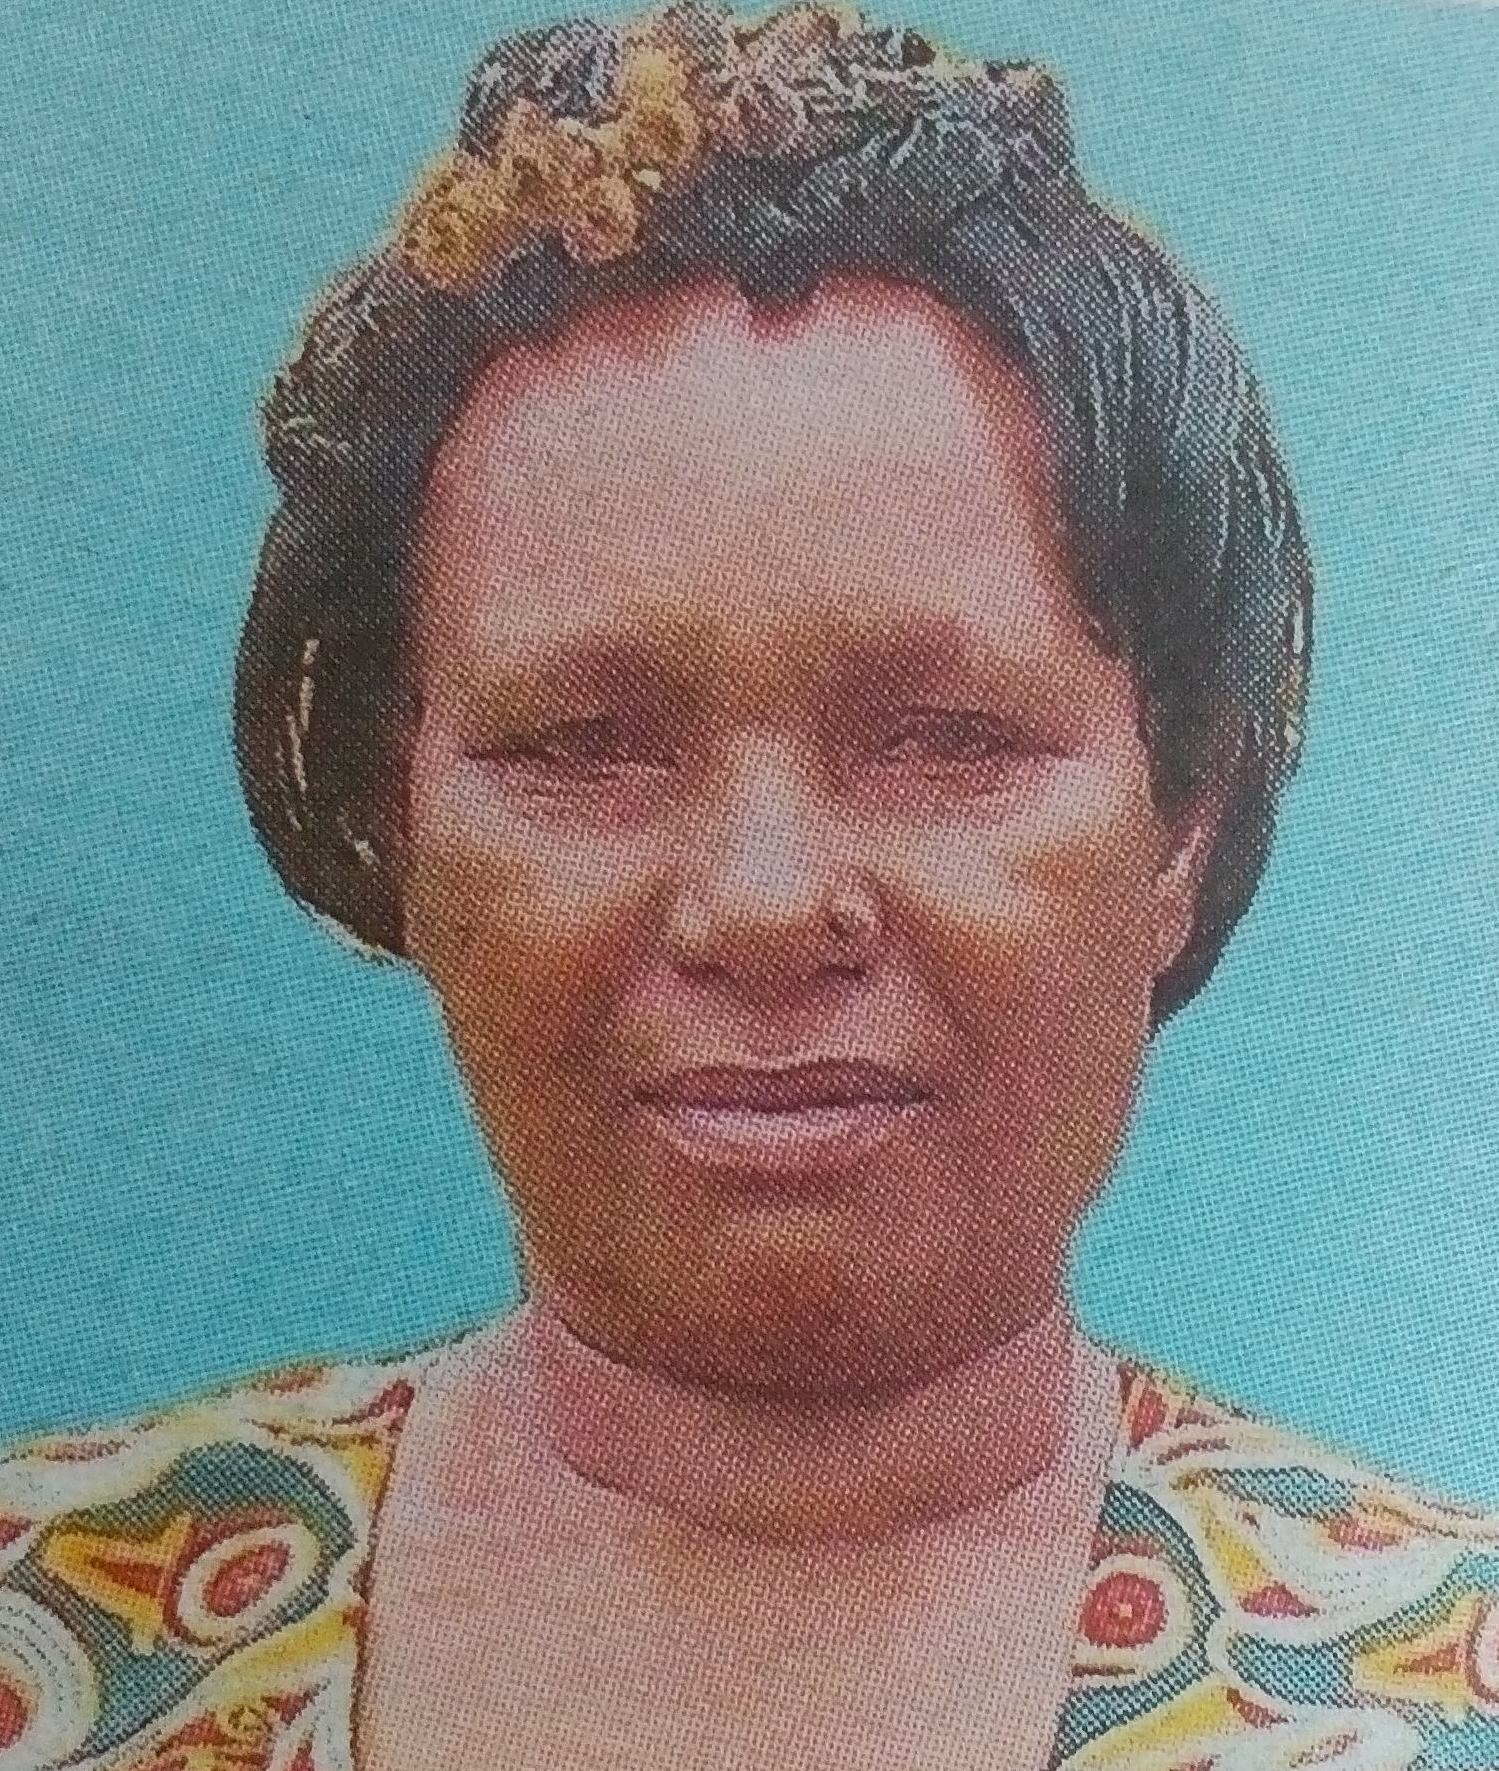 Obituary Image of Susan Kavela Munyalo